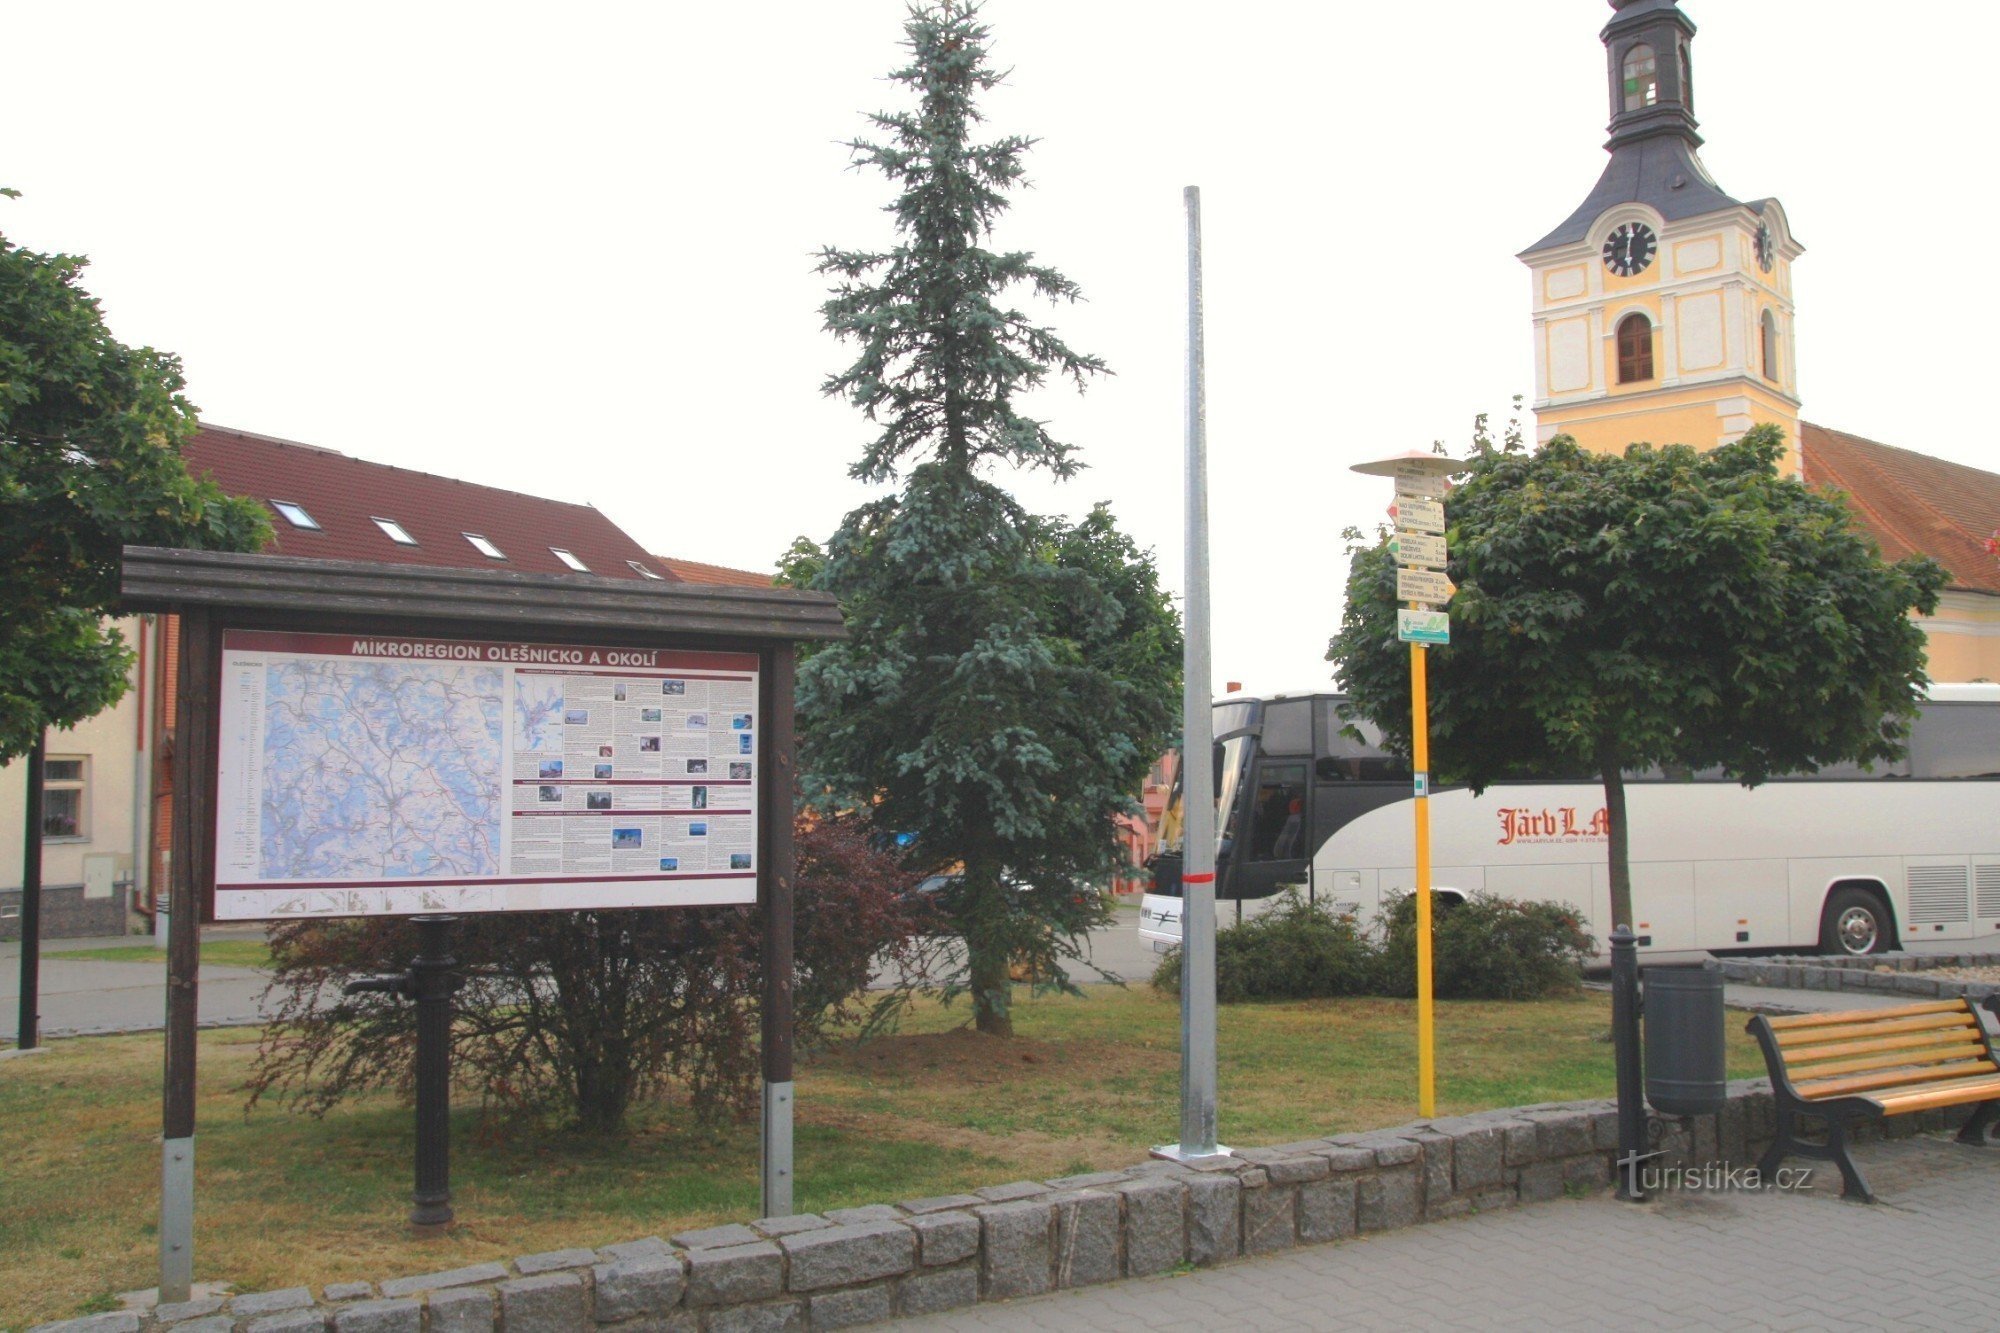 Olešnice tourist crossroads